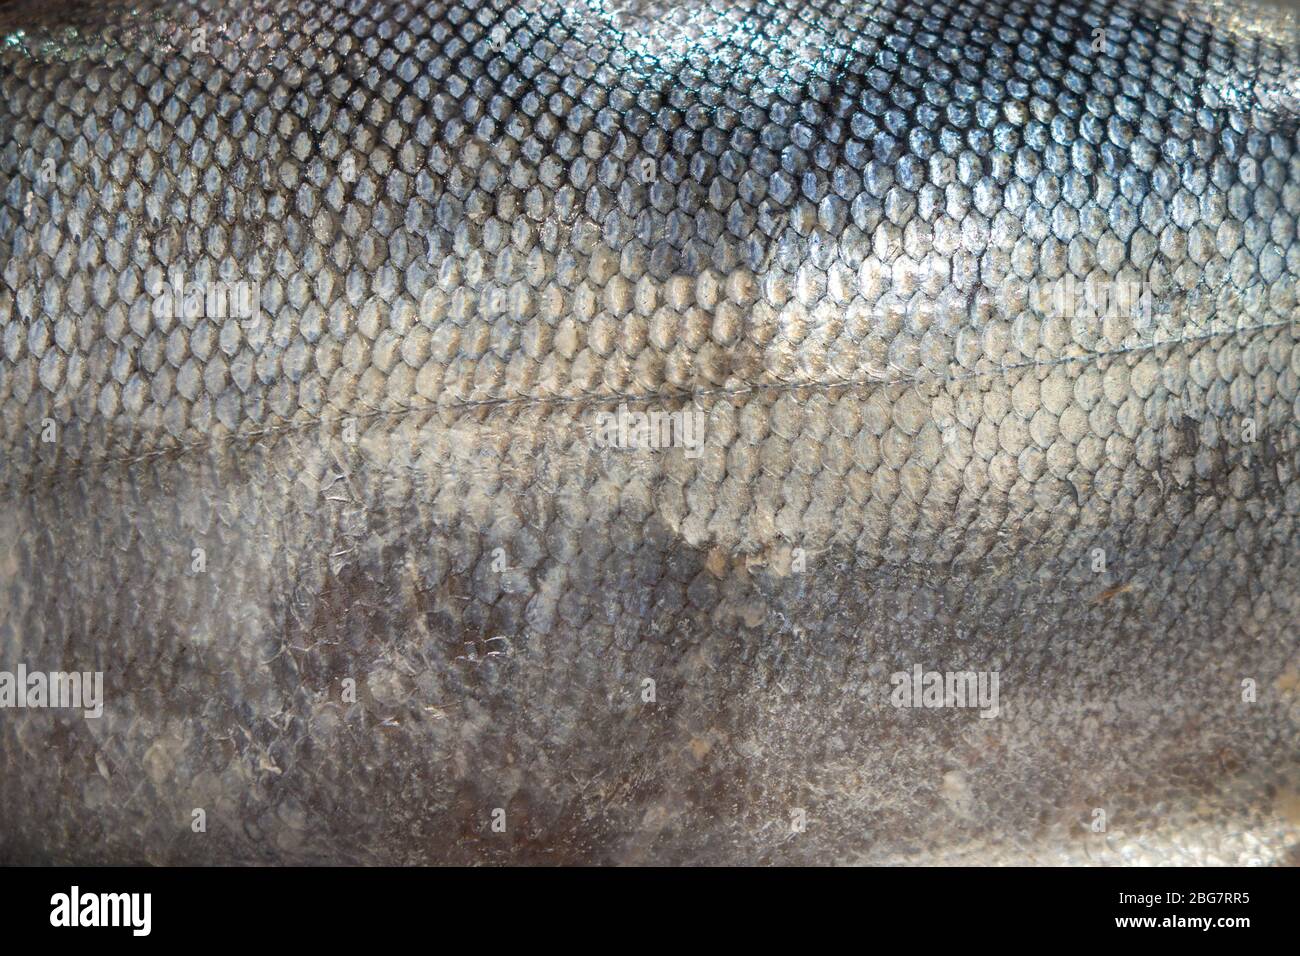 primer plano de las escamas de piel de pescado fresco de un pez de mar Foto de stock